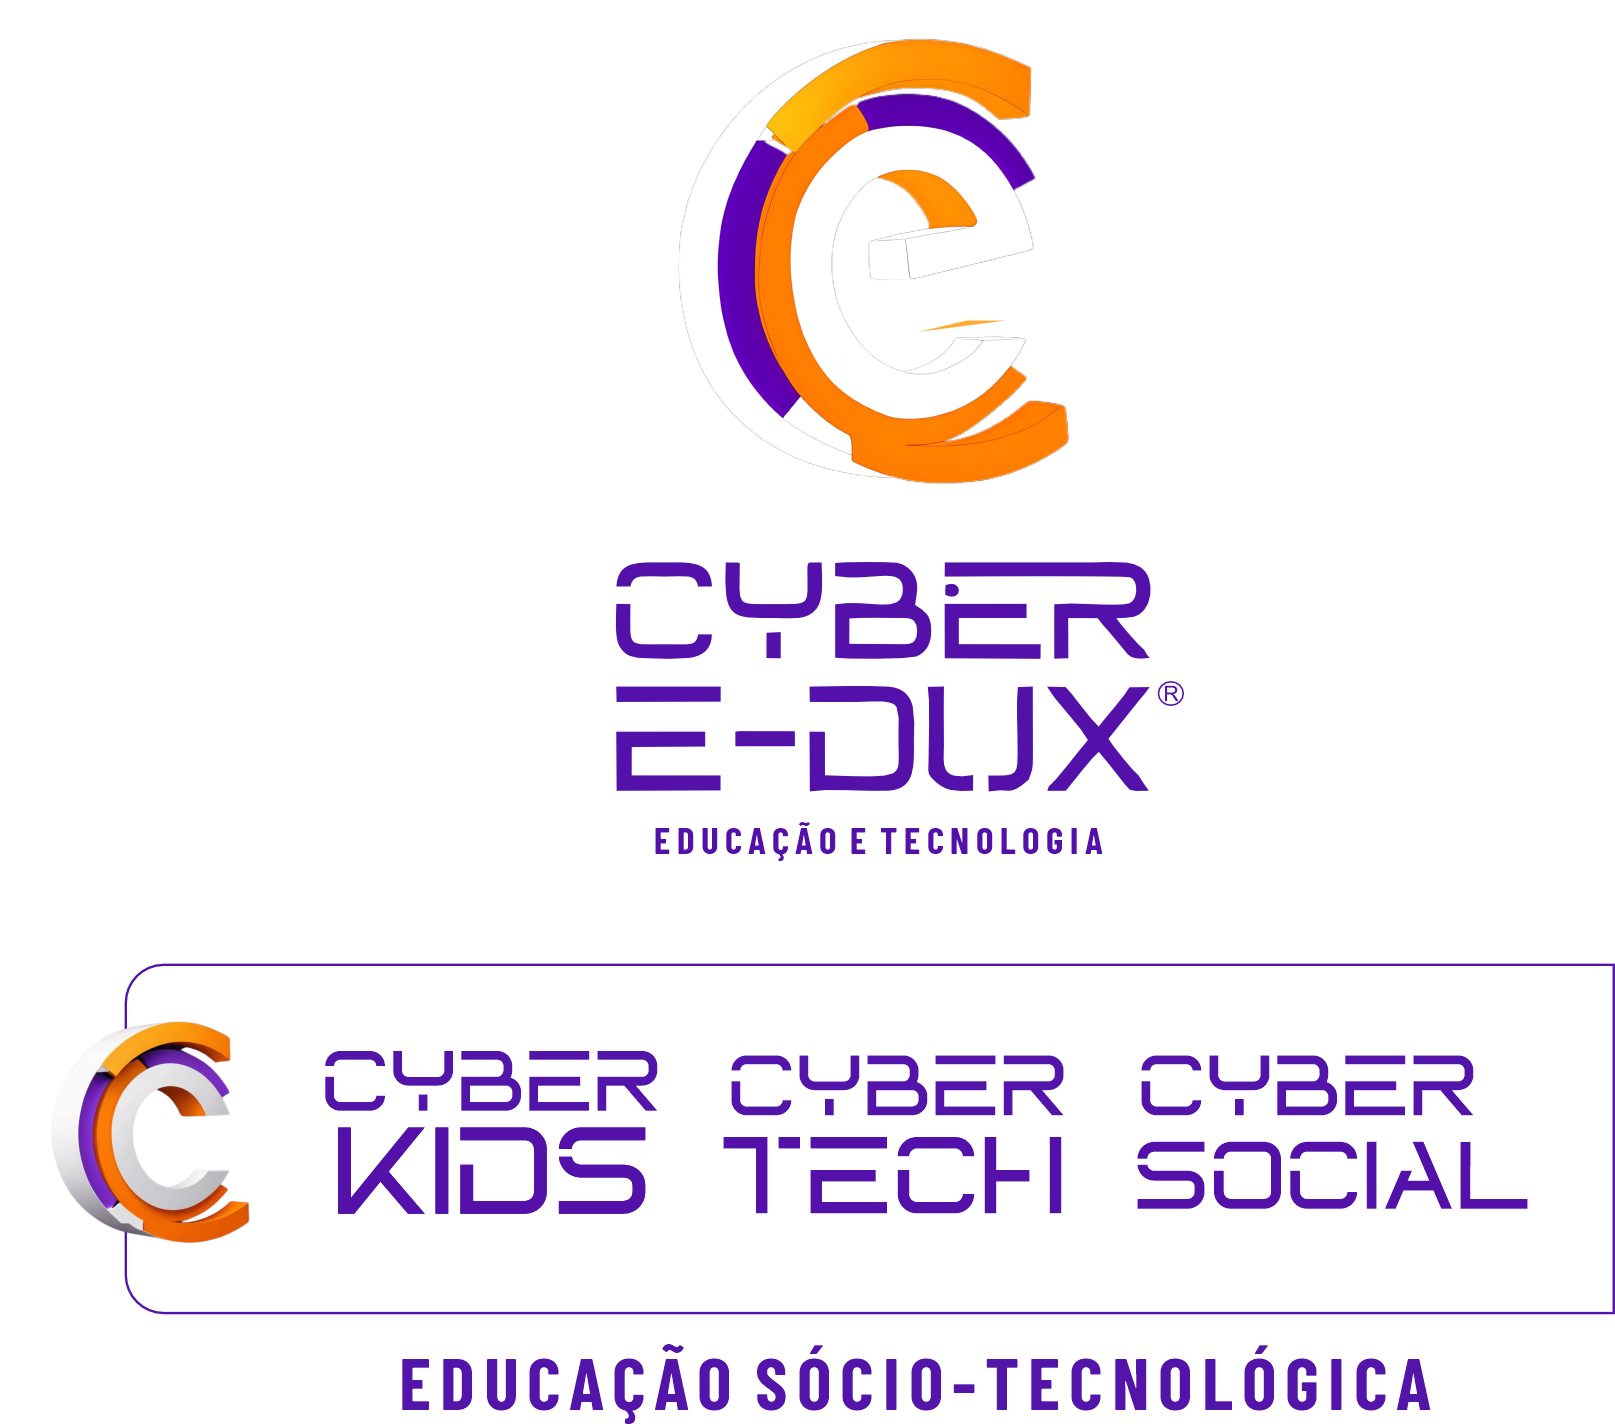 Cyber Edux Educação e Tecnologia